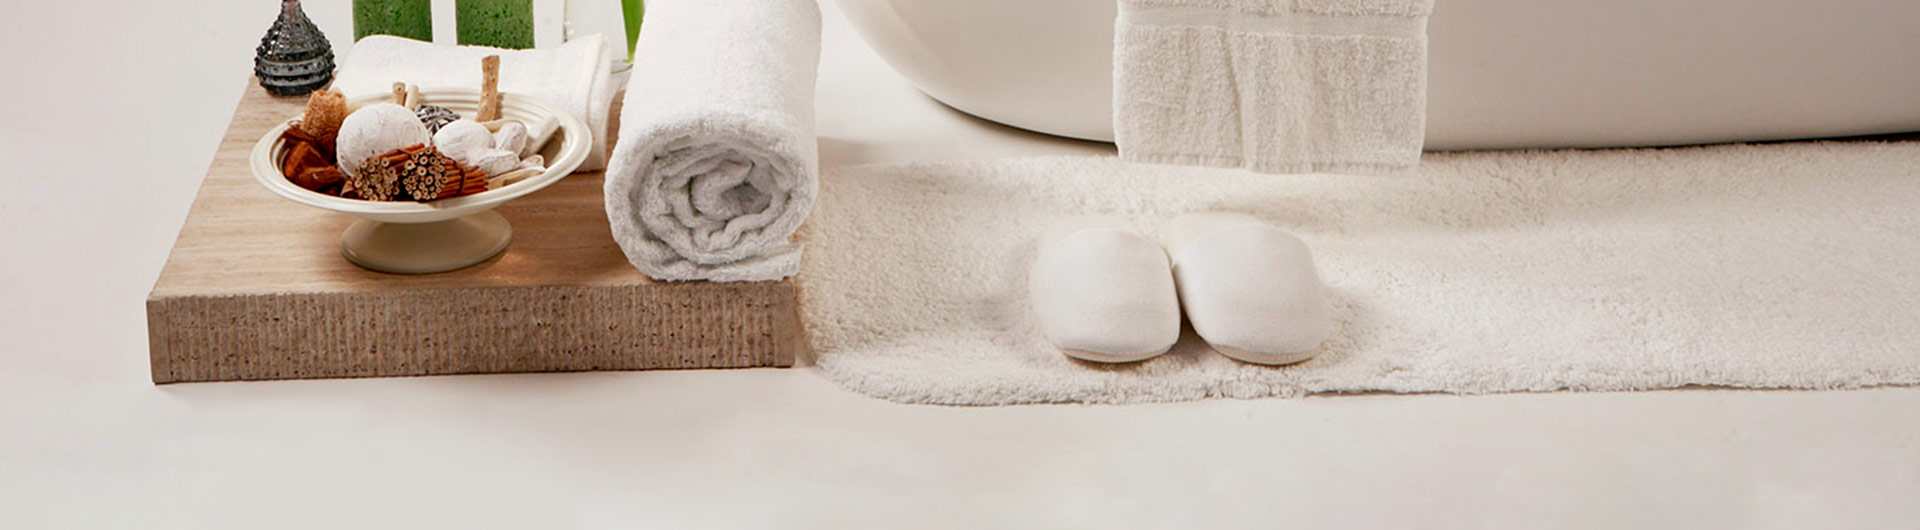 ELIYA Hotel Bath Towels Buying Guide 1